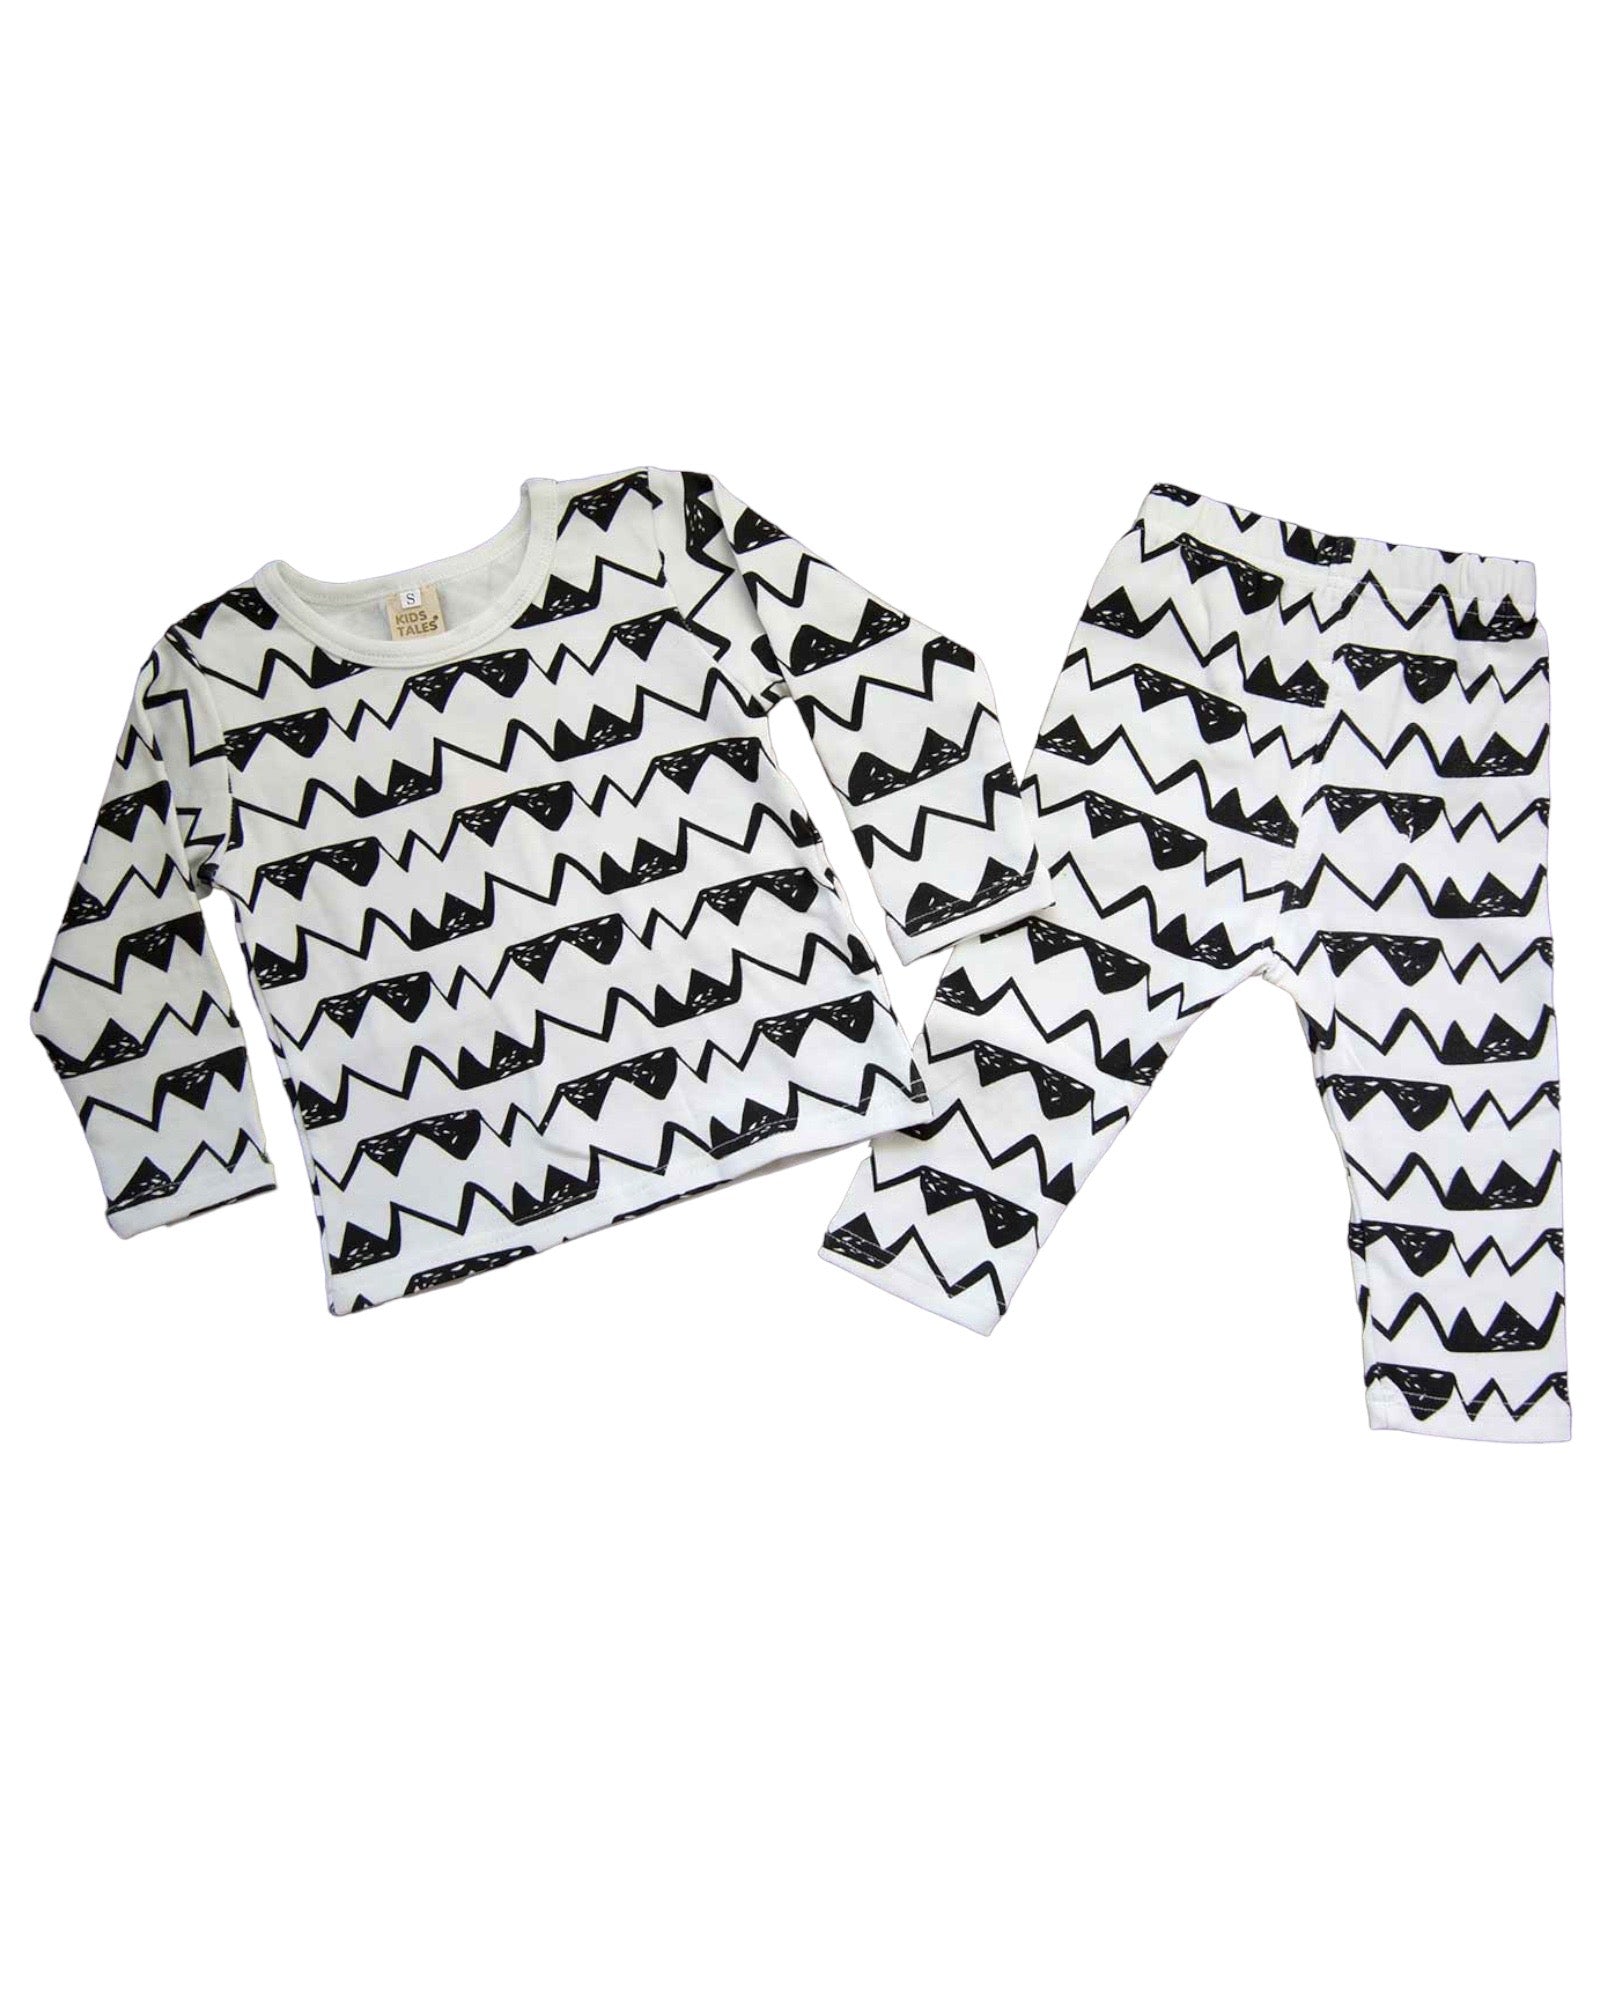 Black And White 2 piece Pajama set